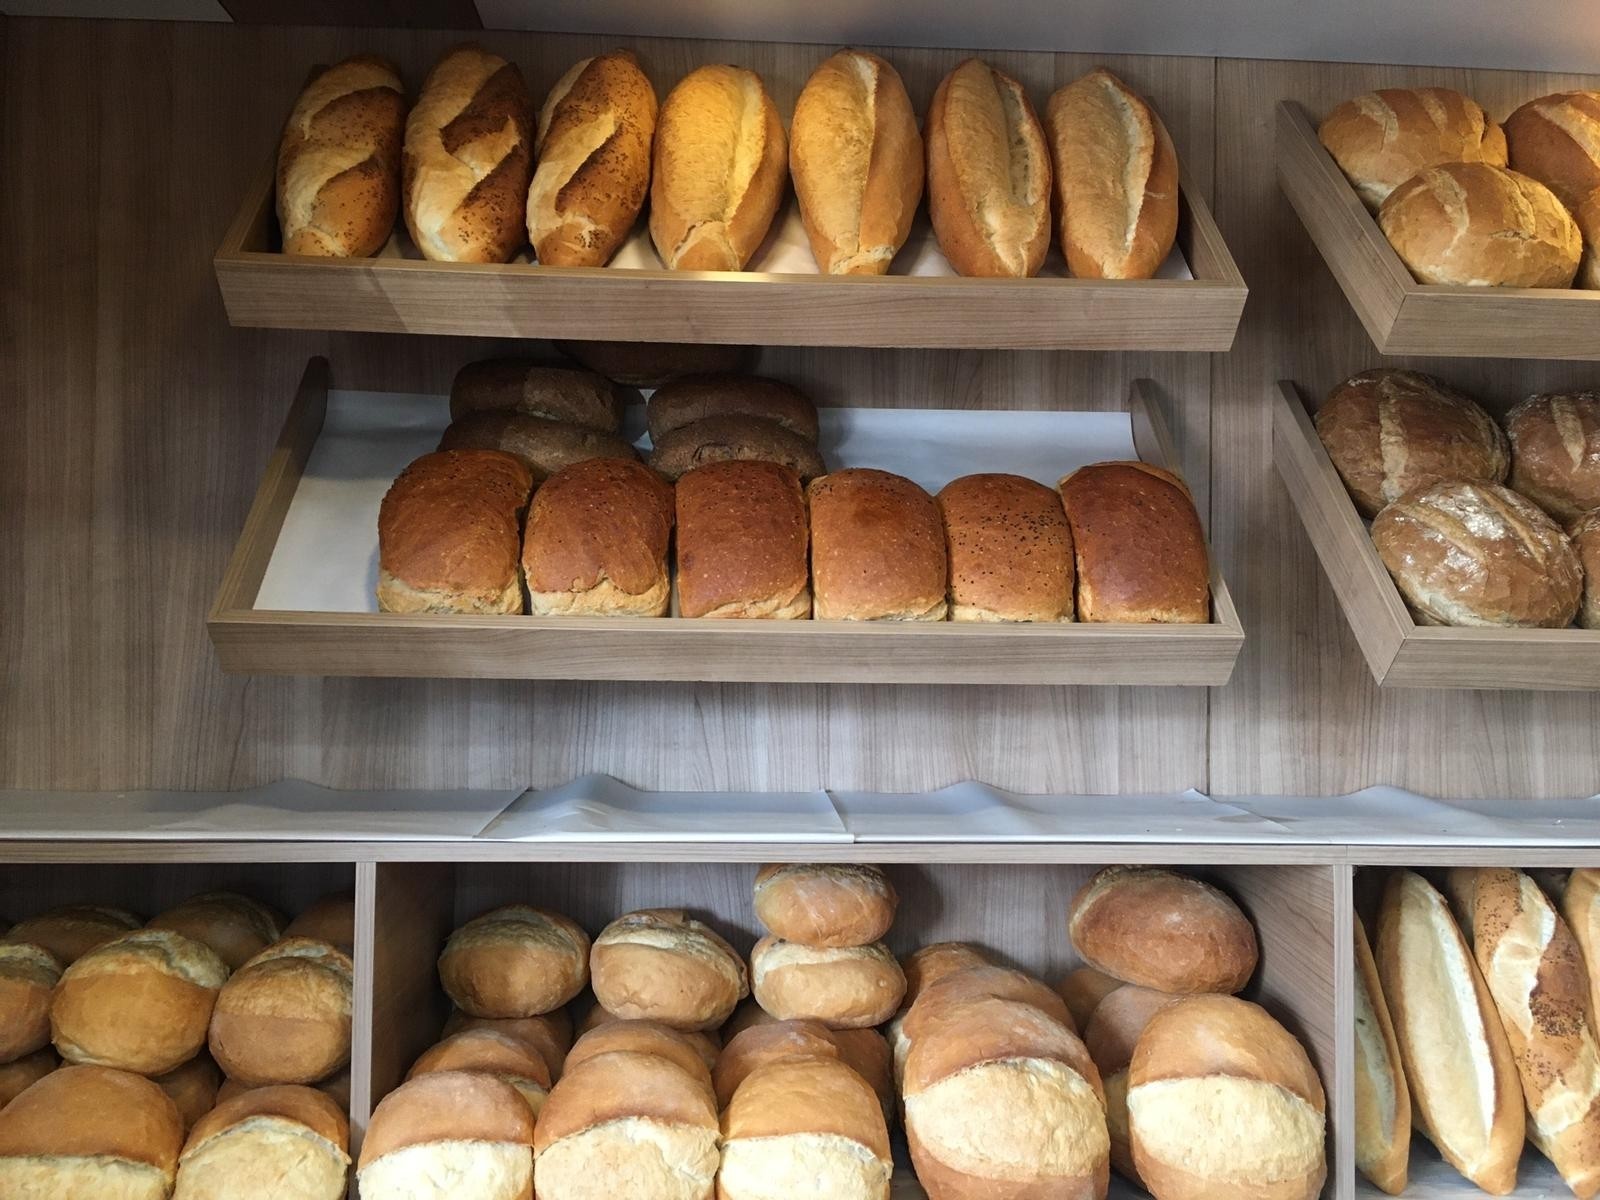 Bartın’da ekmek gramajı ve ekmek fiyatları arttı